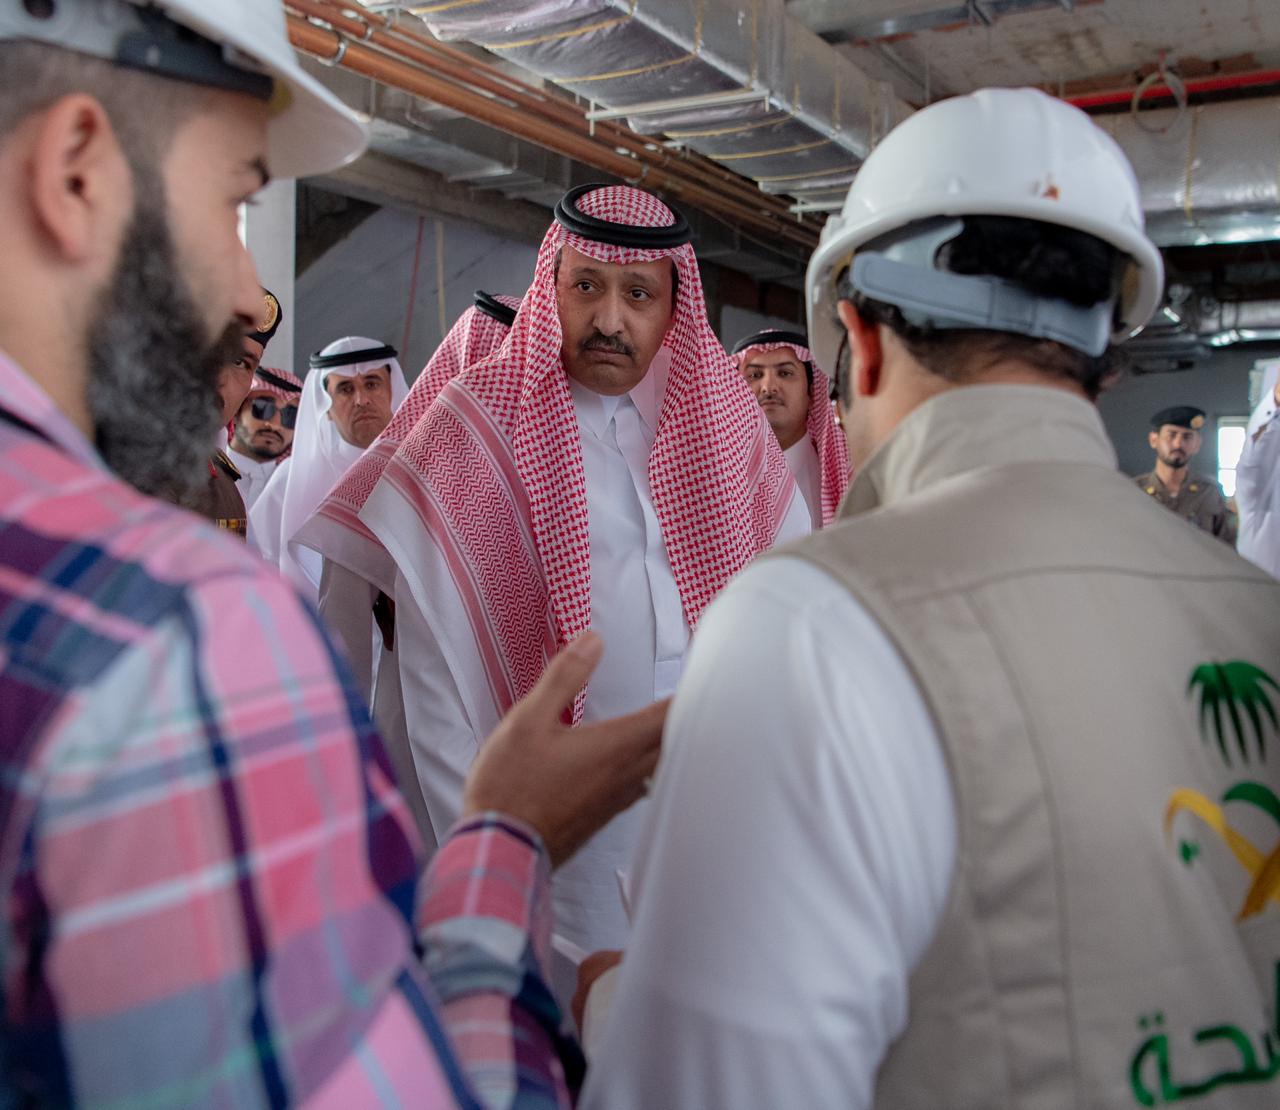 أمير الباحة يقف على عدد من مشروعات الصحة والمتحف الإقليمي بالمنطقة